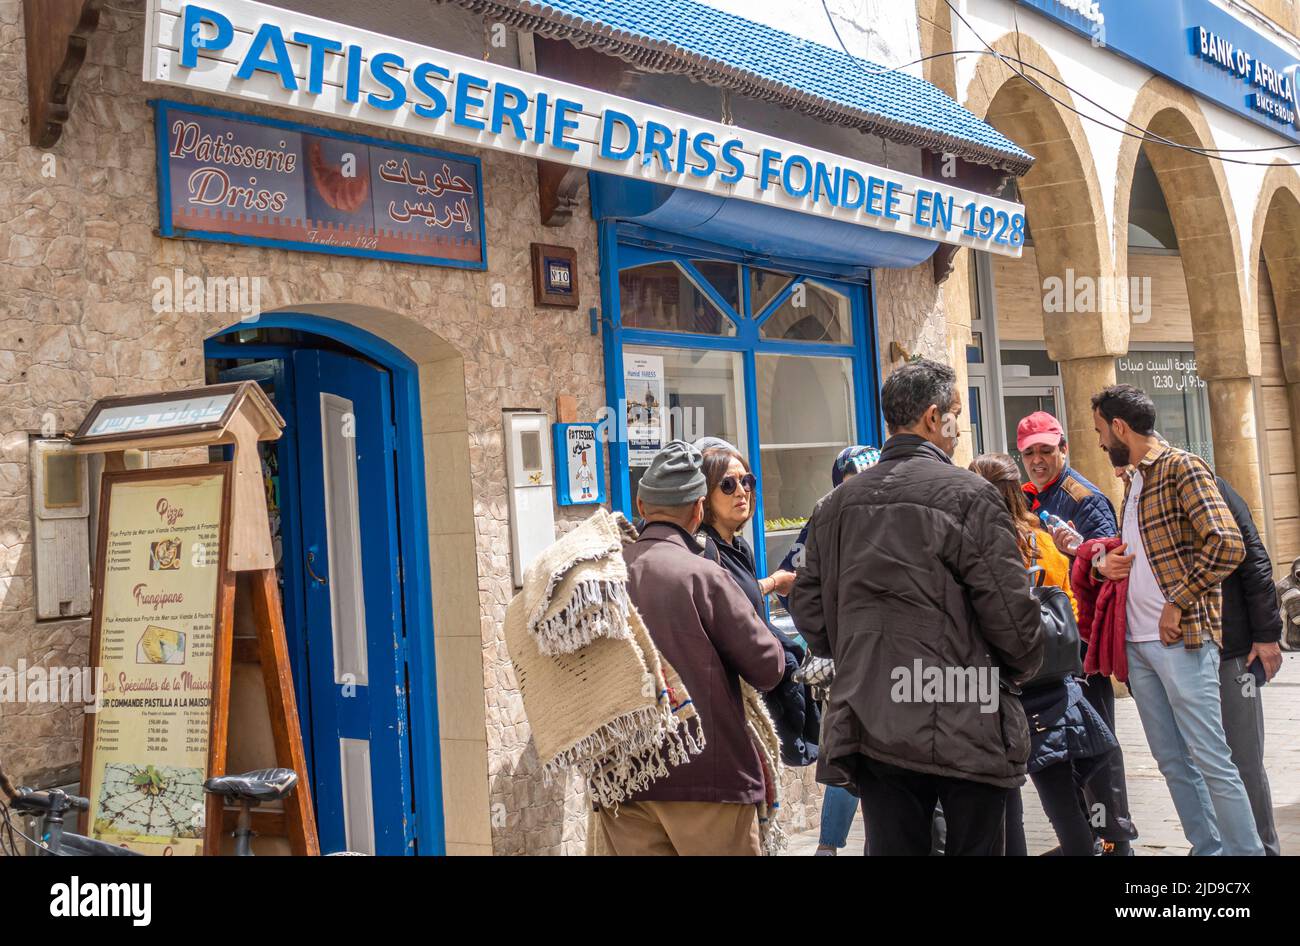 Pâtisserie Driss, fondue en 1928. Pasries, sucreries, gâteau et boutique historique et café à Essaouira, Maroc Banque D'Images